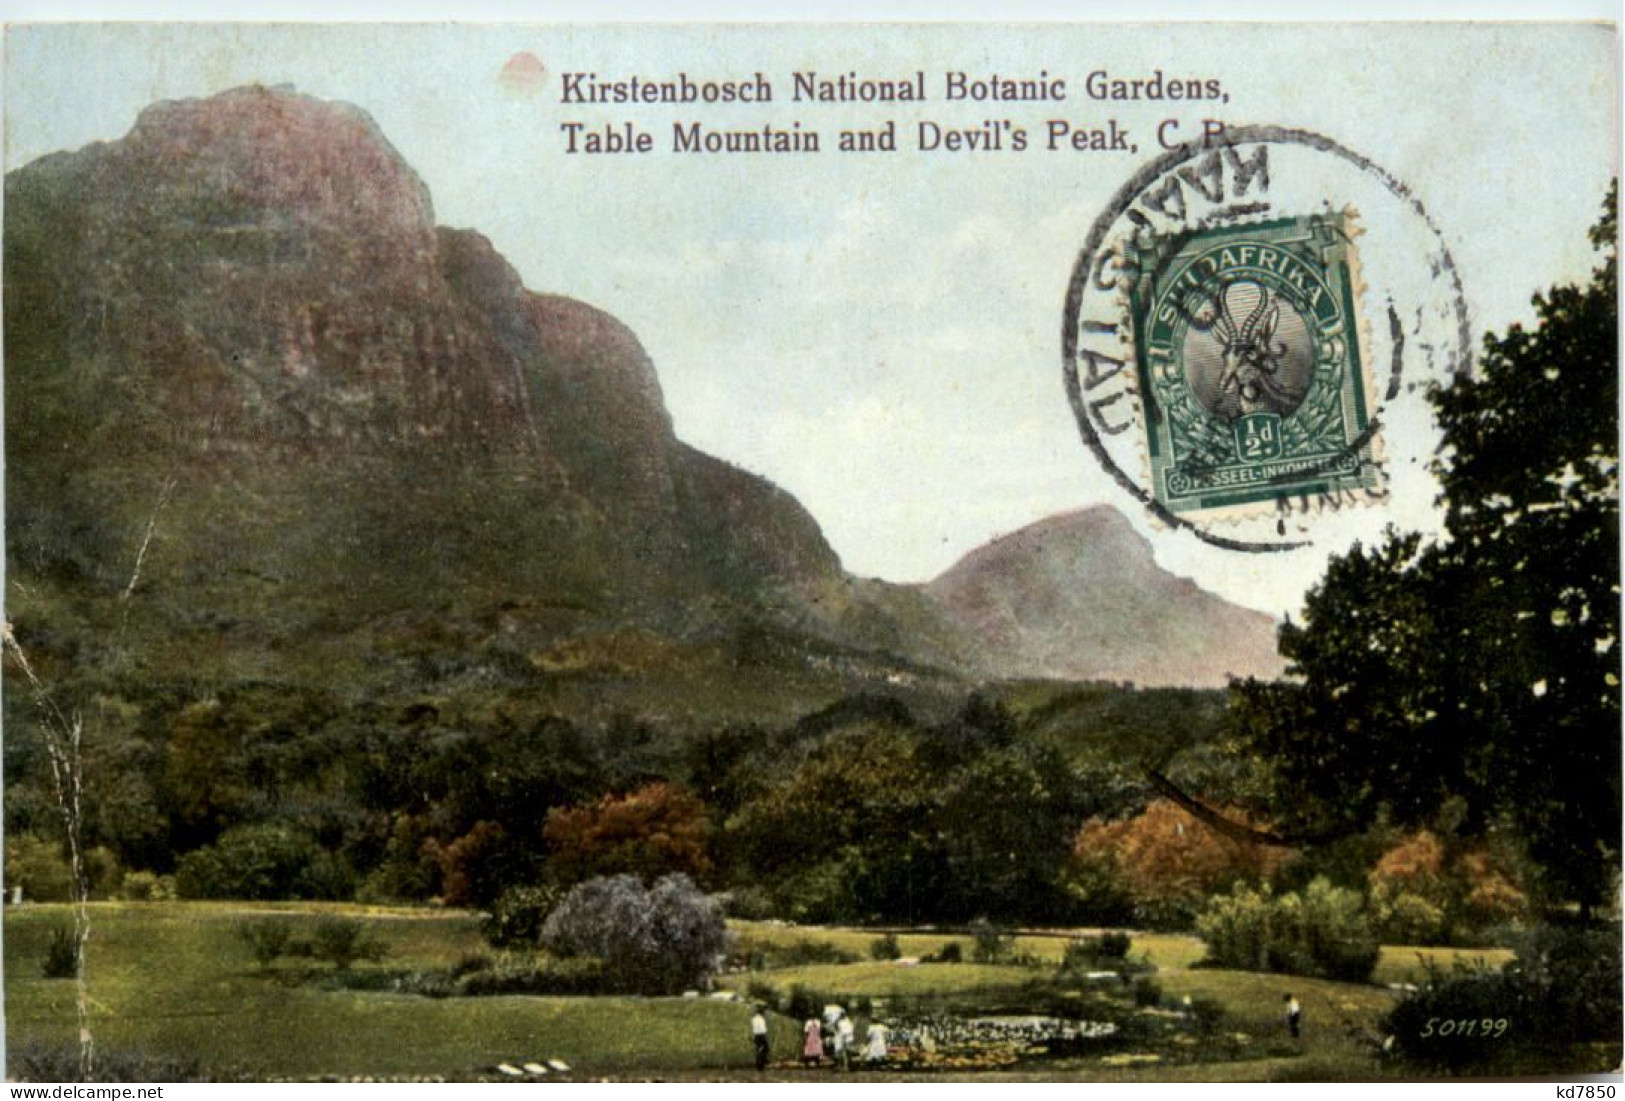 Kirstenbosch National Botanic Gardens - South Africa